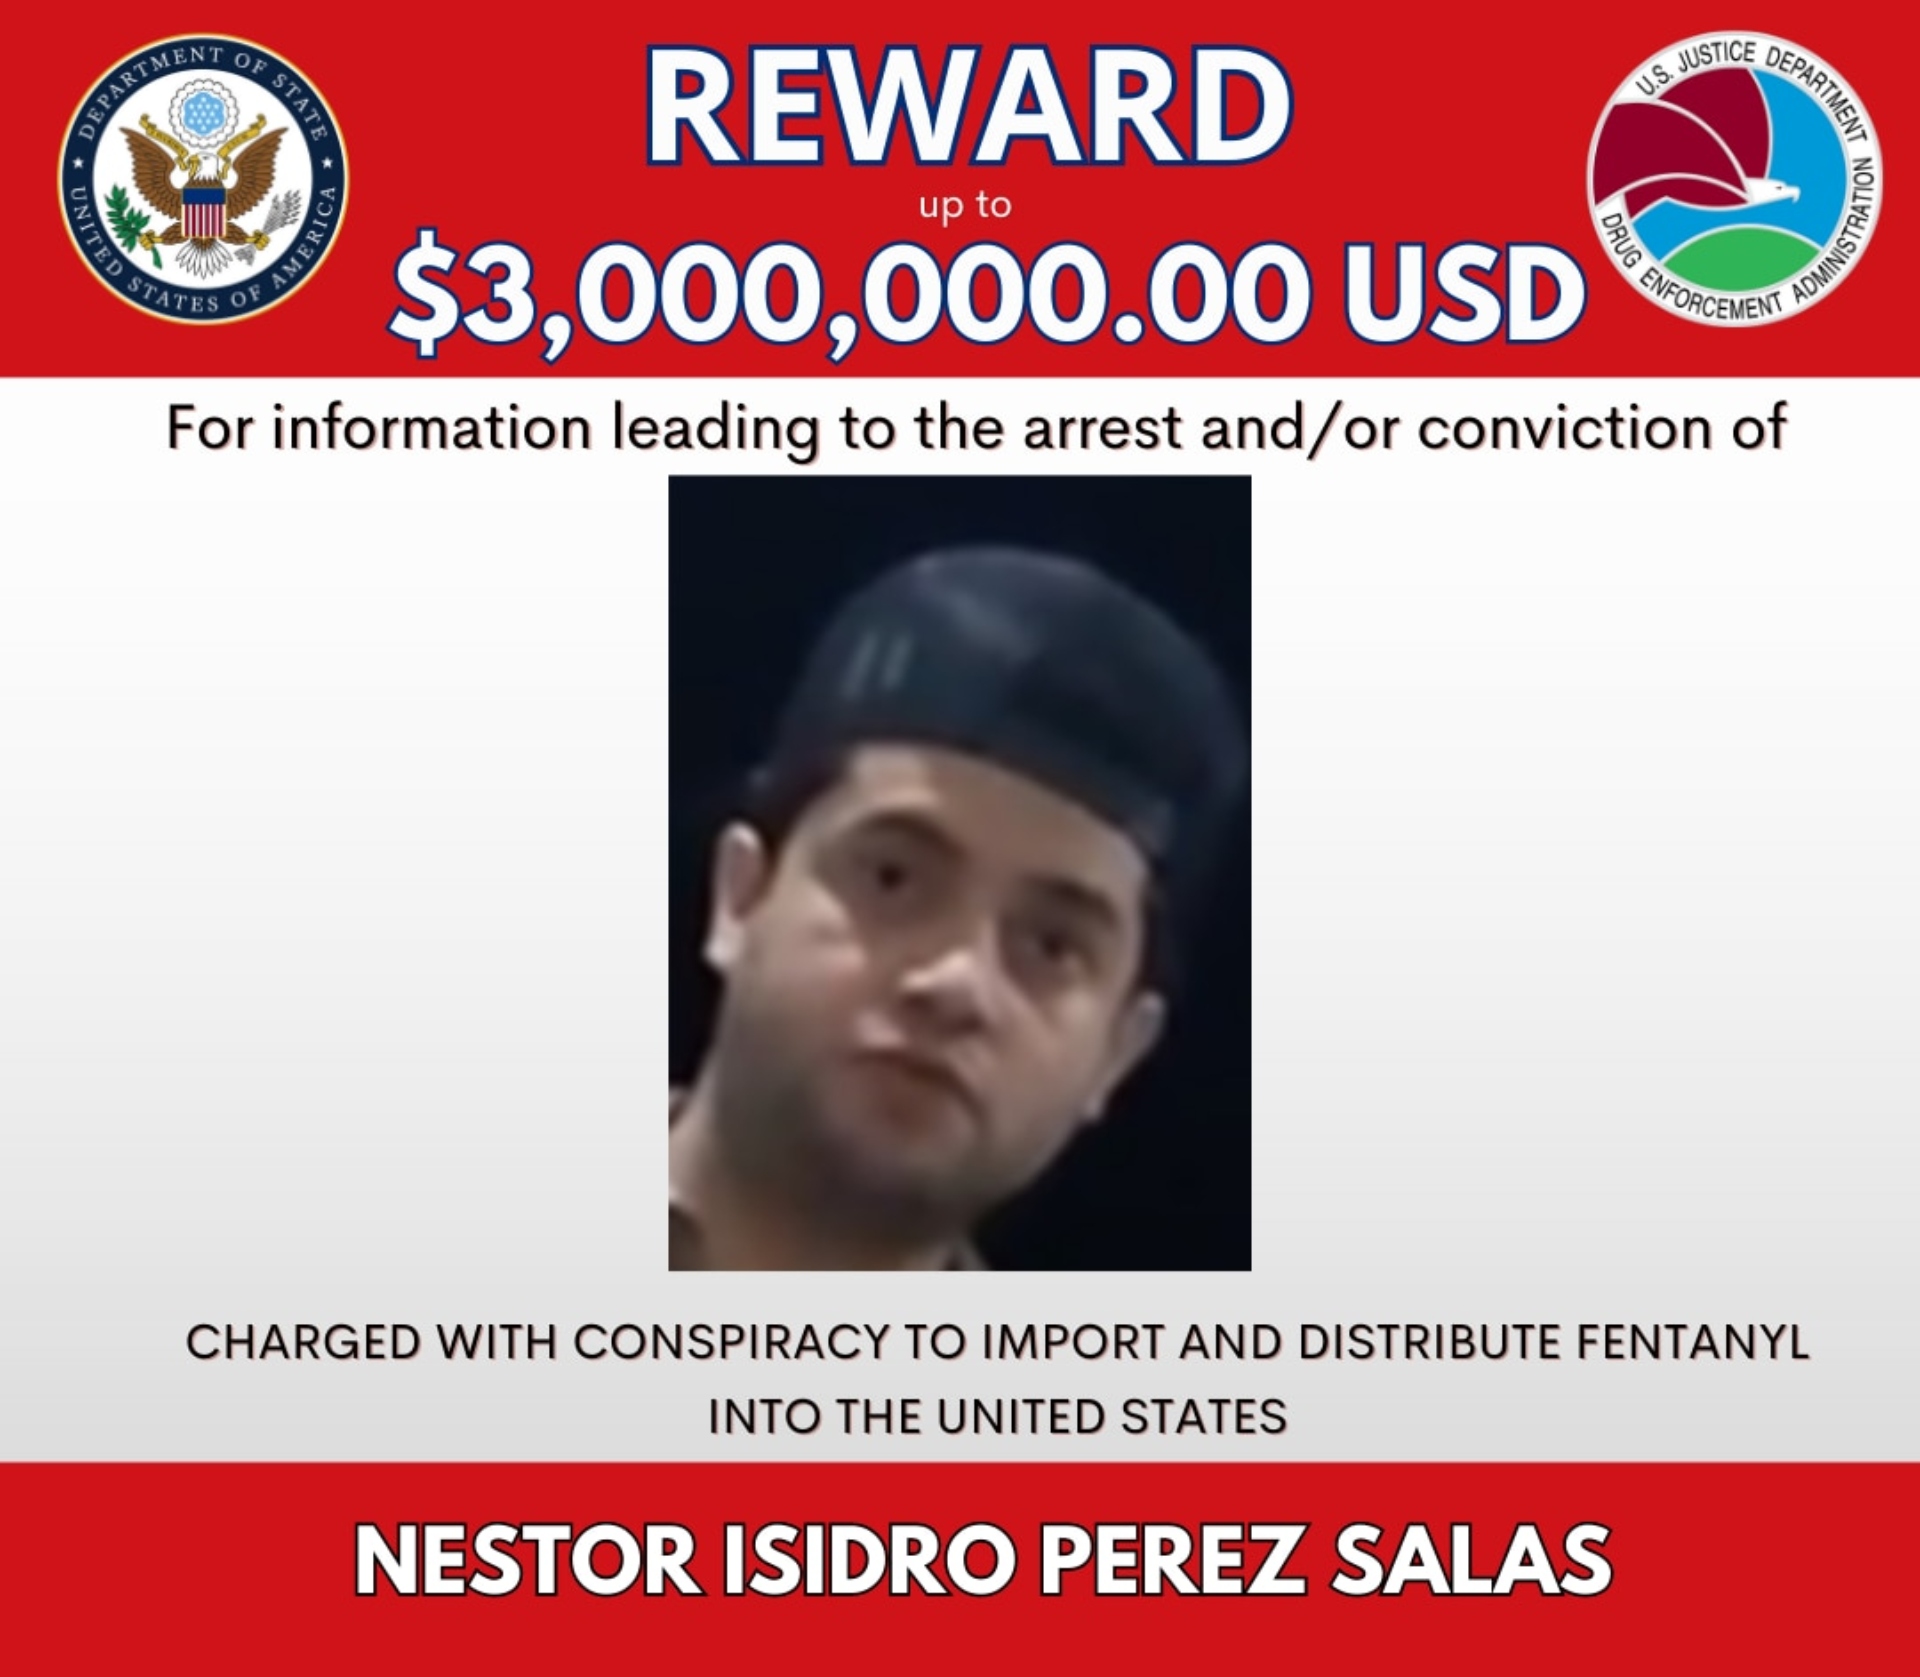 Conocido también como "Nini", "El General" o "19", Néstor Isidro Pérez Salas es requerido por la justcia estadounidense (Departamento de Estado EEUU